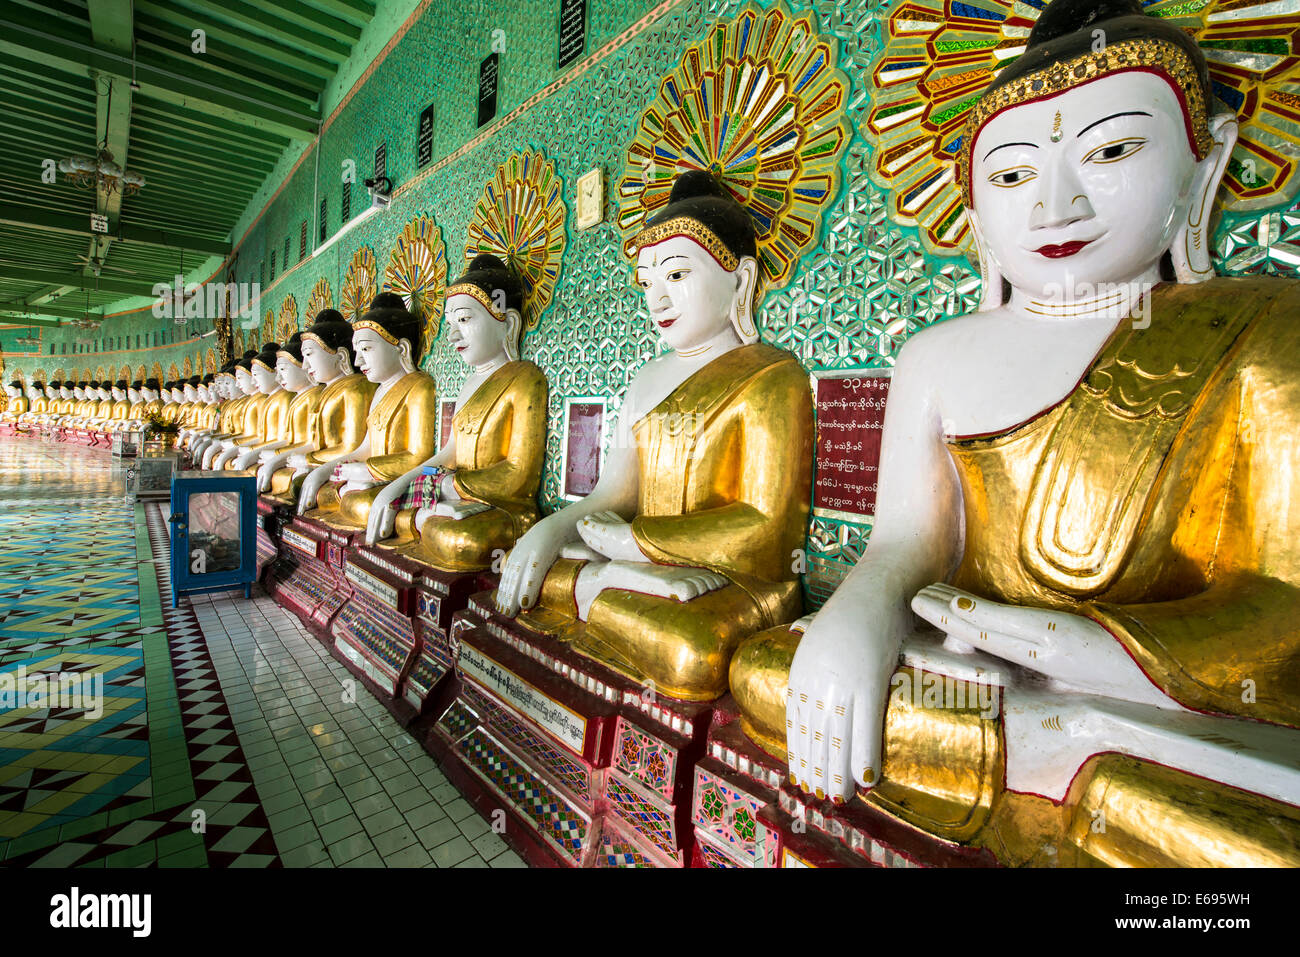 Viele sitzende Buddha Skulpturen, Wände mit Glasmosaik, Umin Thounzeh, Umin Thonse oder U-Min-Thonze-Pagode oder 30 Höhlen dekoriert Stockfoto